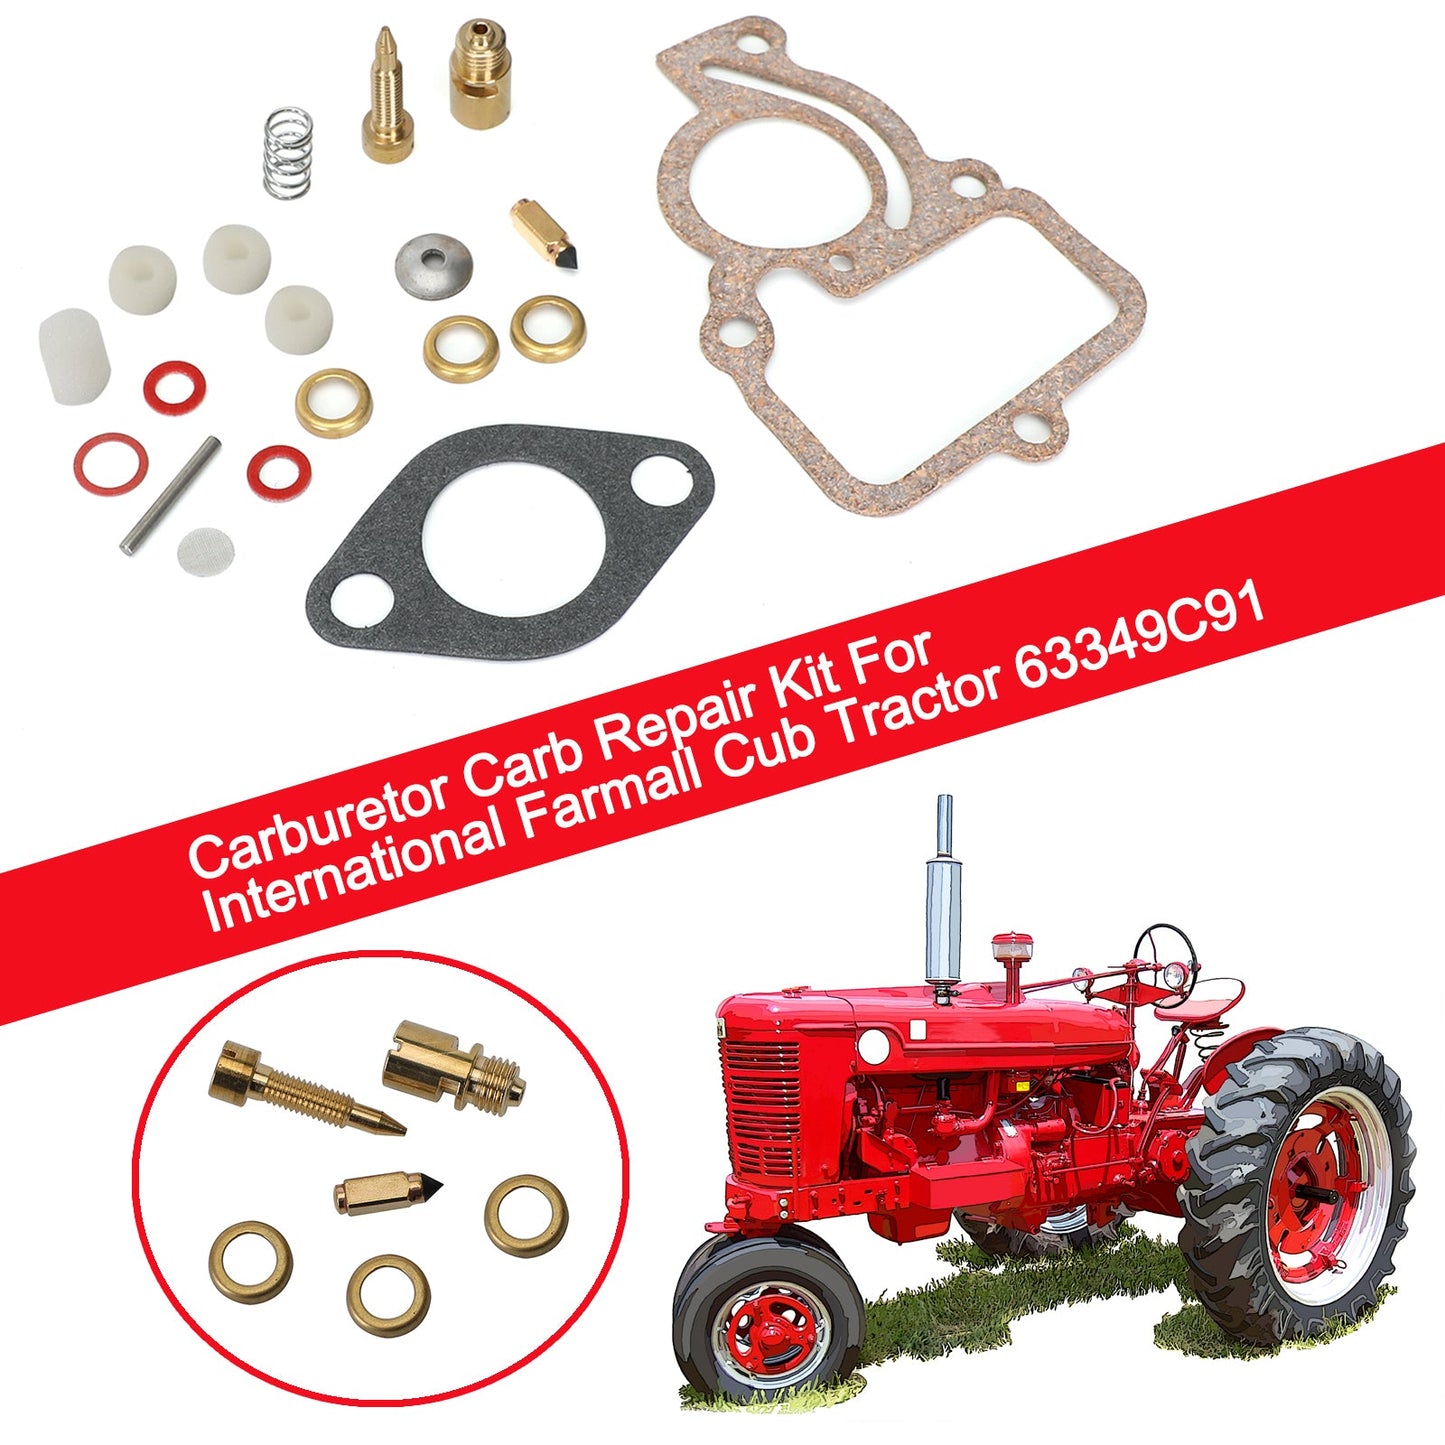 Carburetor Carb Repair Kit For International Farmall Cub Tractor 63349C91